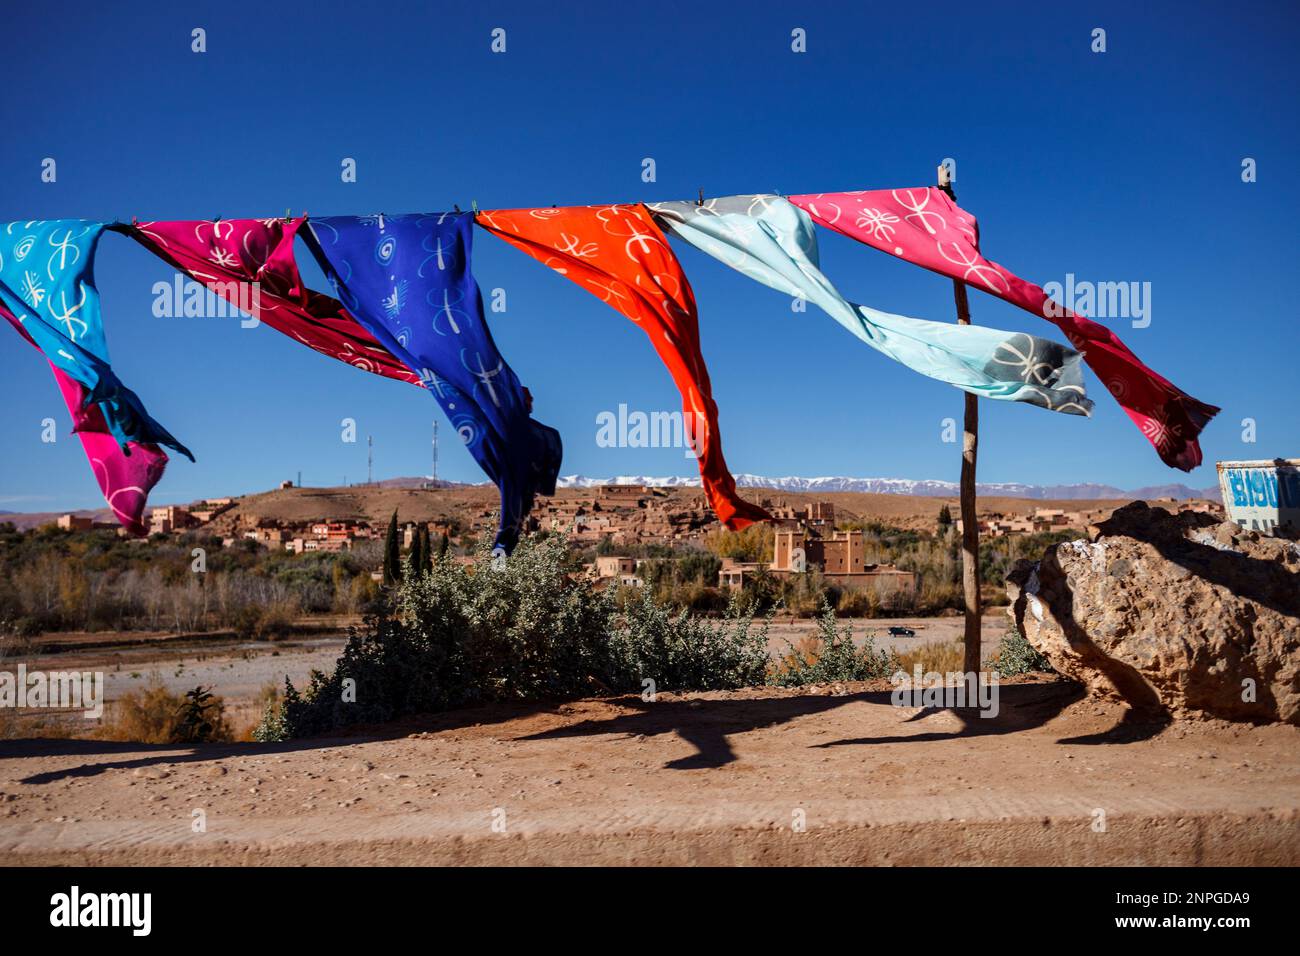 Asciugamani colorati nel vento in Marocco Foto Stock